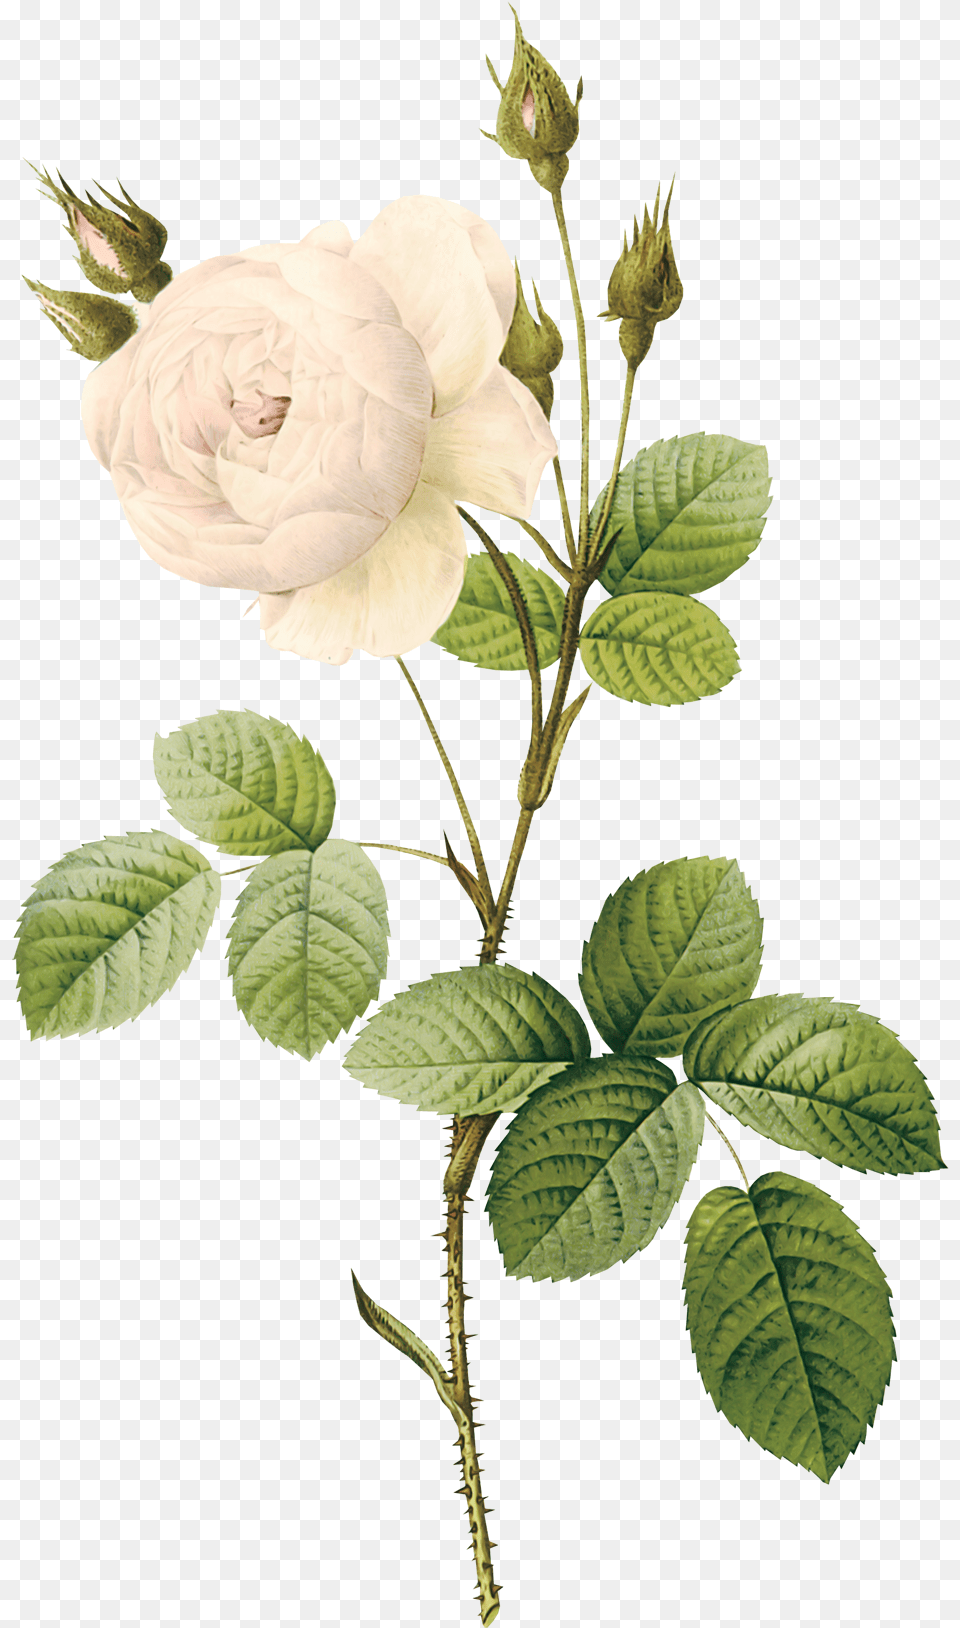 Stem Of A Plant Plantpng Images Flower Stem, Leaf, Rose, Herbal, Herbs Free Png Download